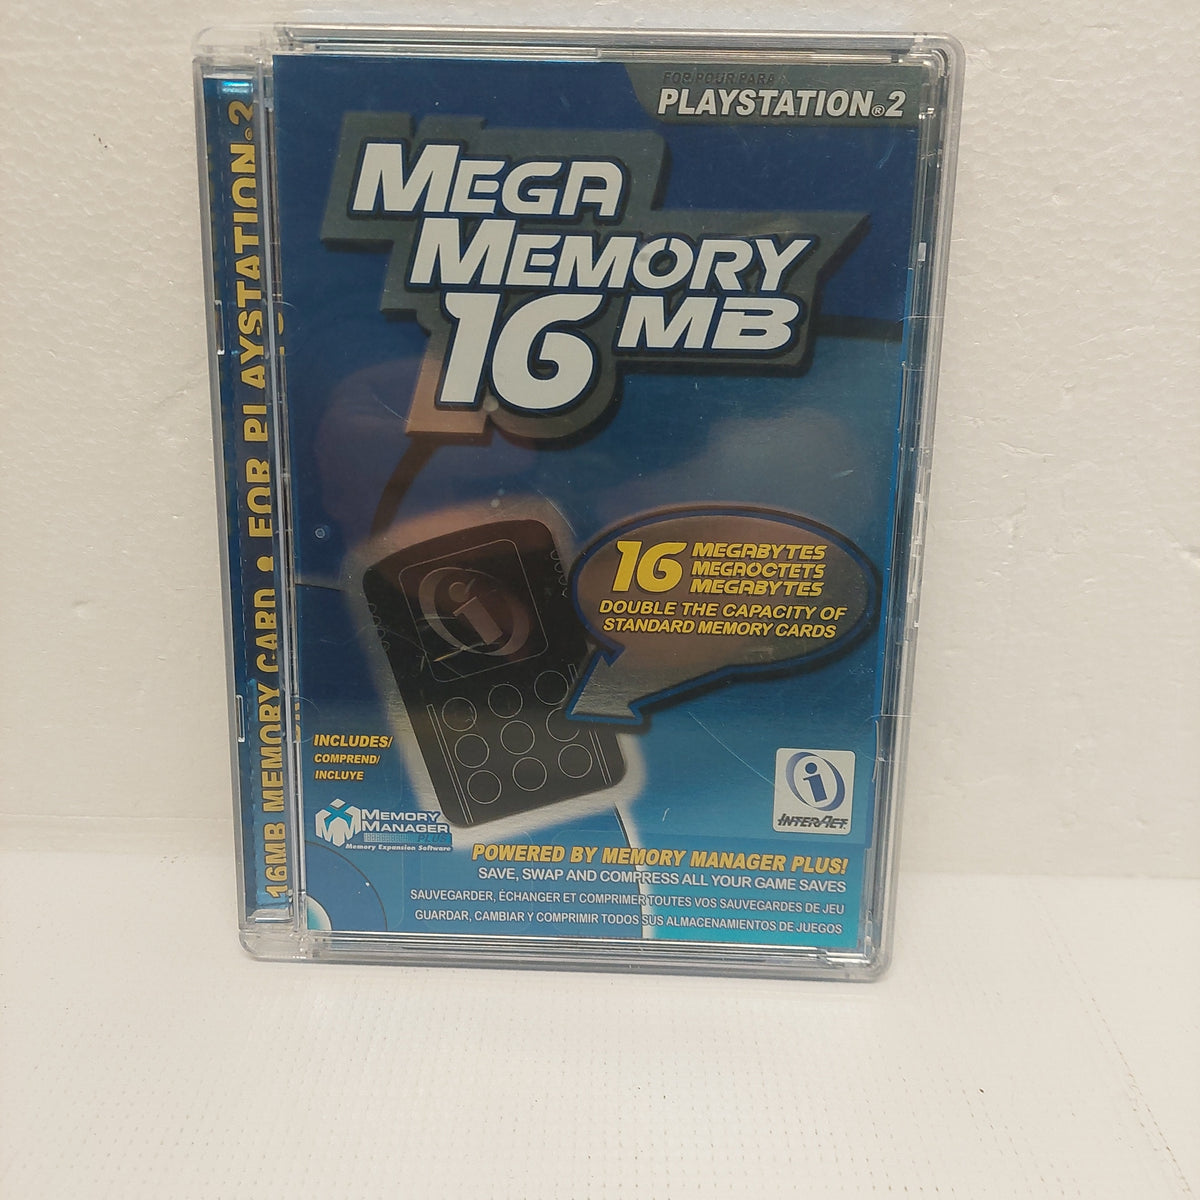 memory card ps2